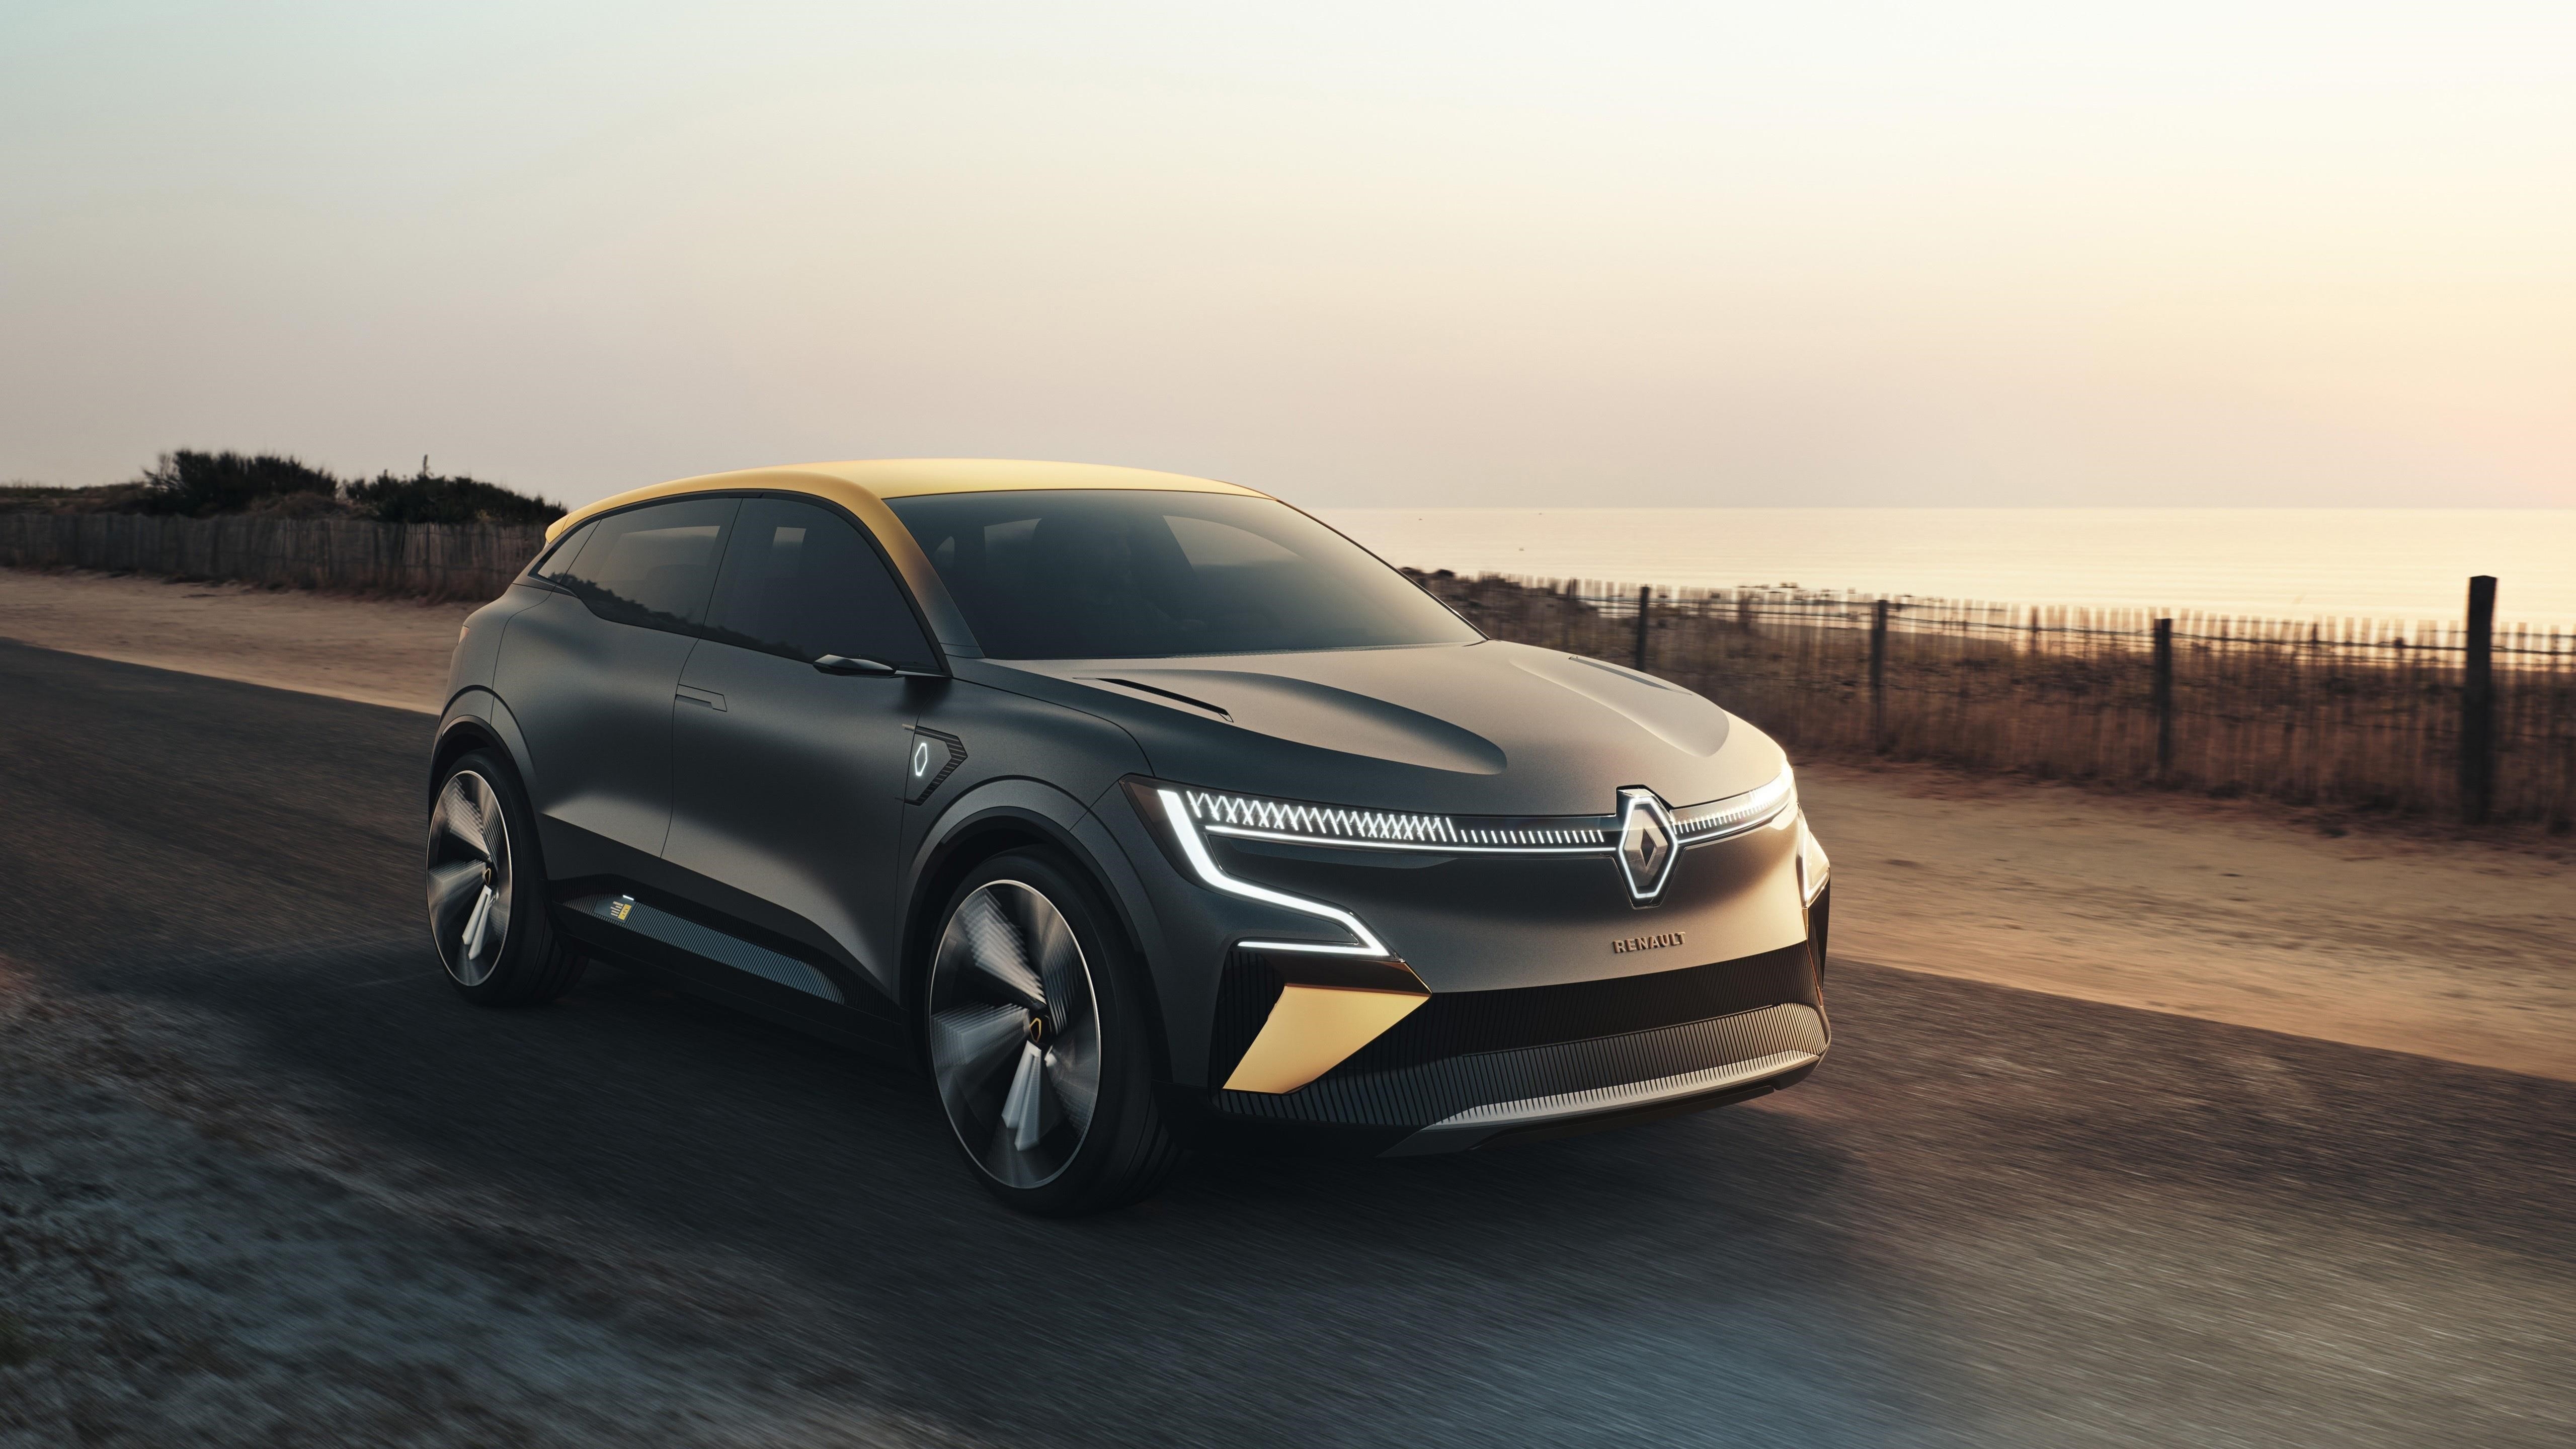 Renault megane vision 2020 3 автомобиля обои скачать